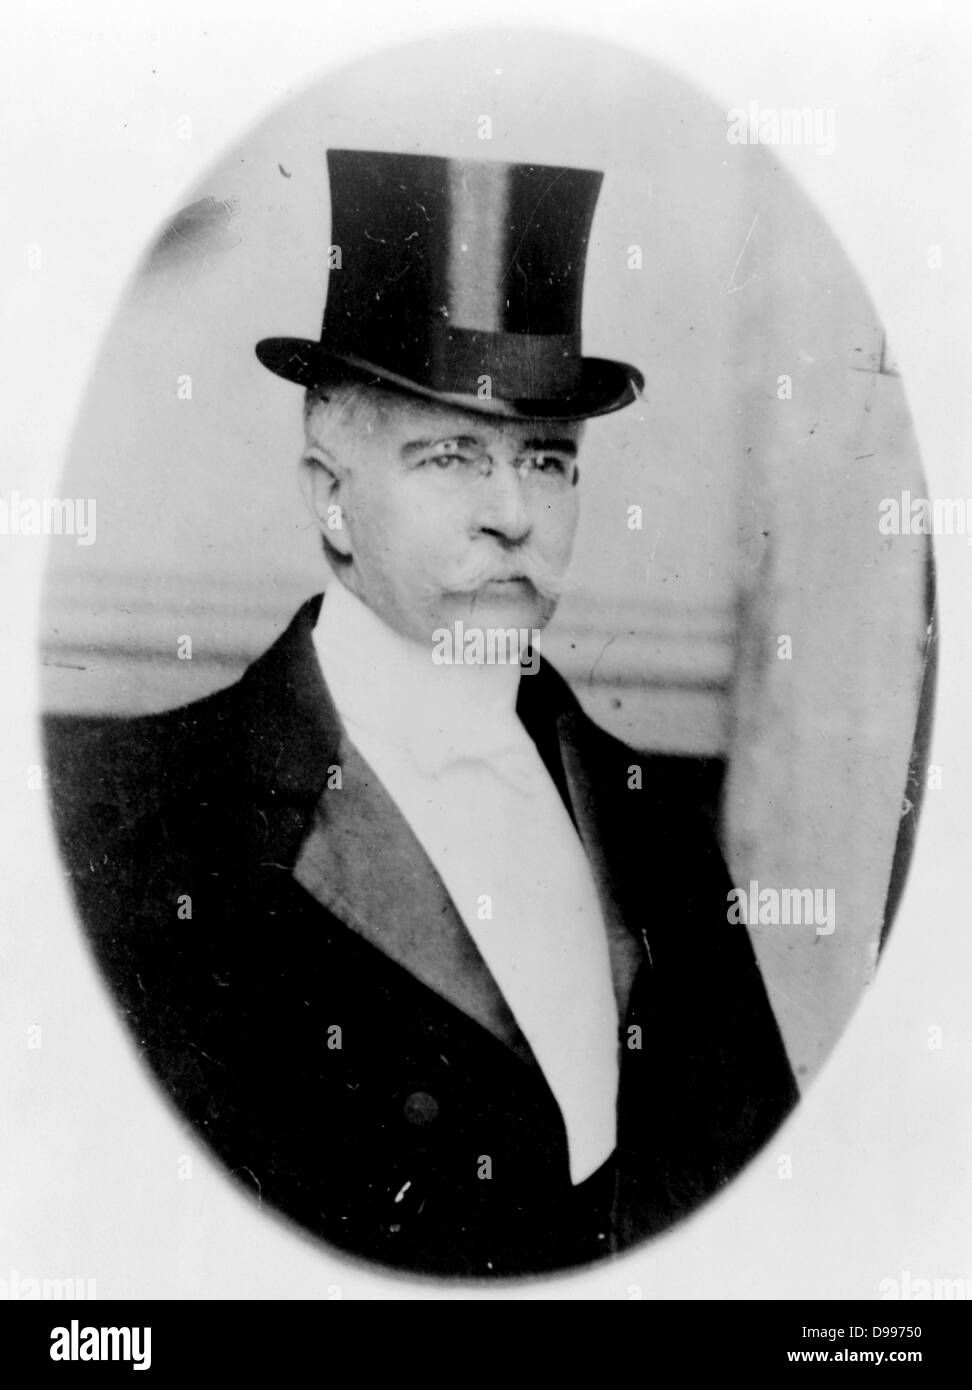 Francisco León de la Barra y Quijano (Querétaro, 16 juin 1863 - 23 septembre 1939 à Biarritz, France) était un homme politique et diplomate mexicain, qui a été président par intérim du Mexique du 25 mai au 6 novembre 1911. Banque D'Images